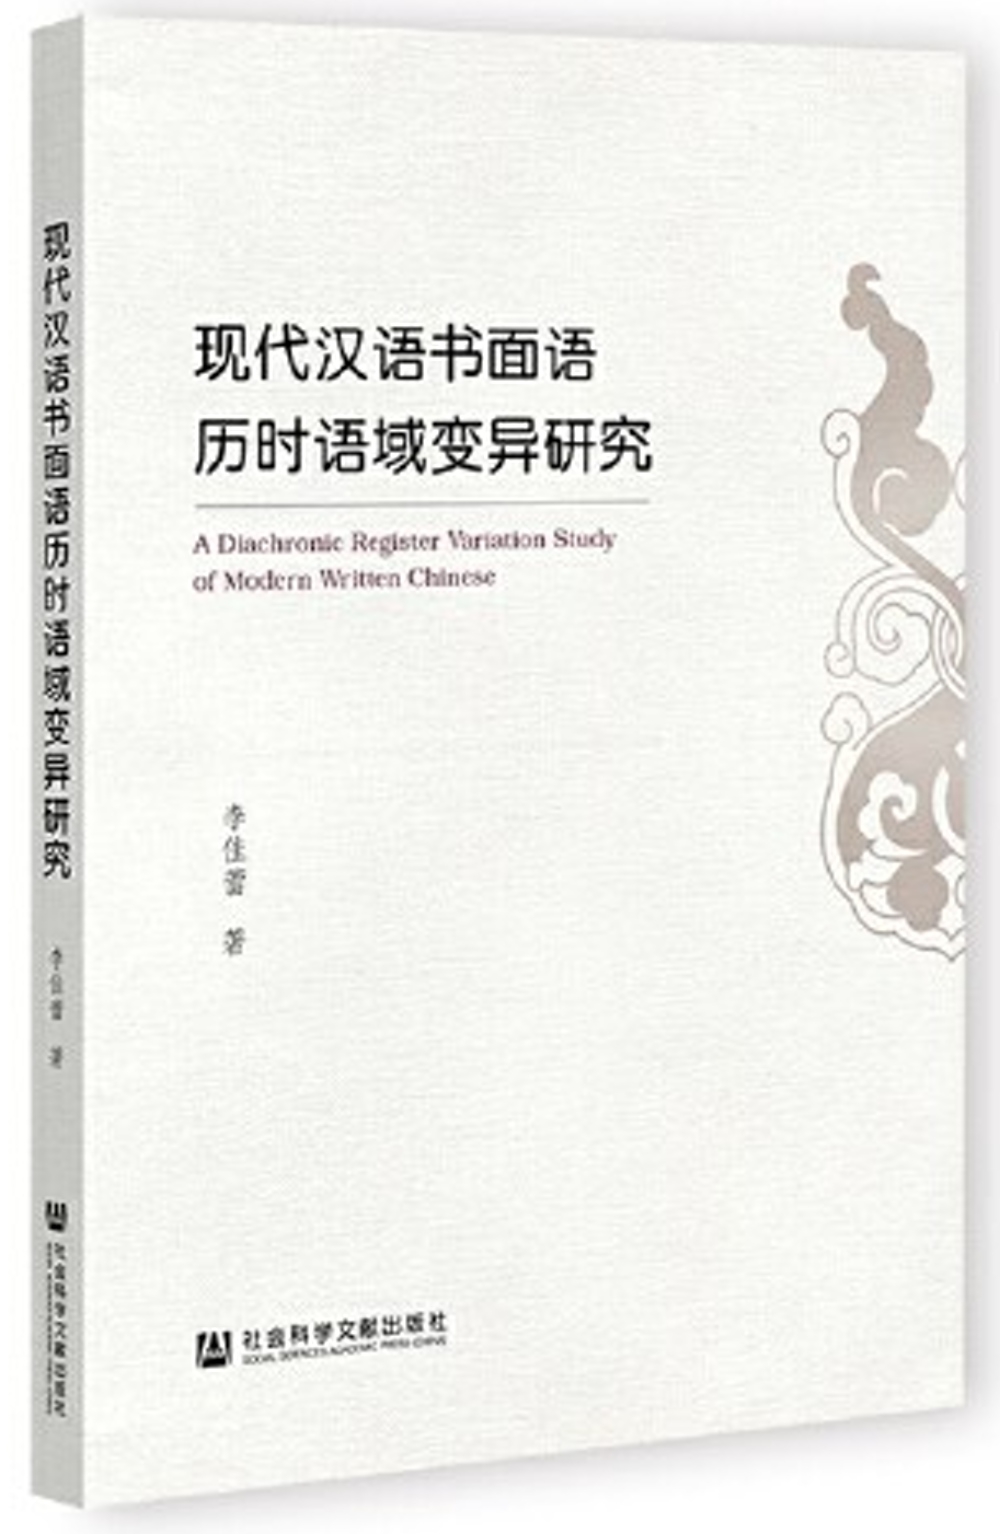 現代漢語書面語歷時語域變異研究